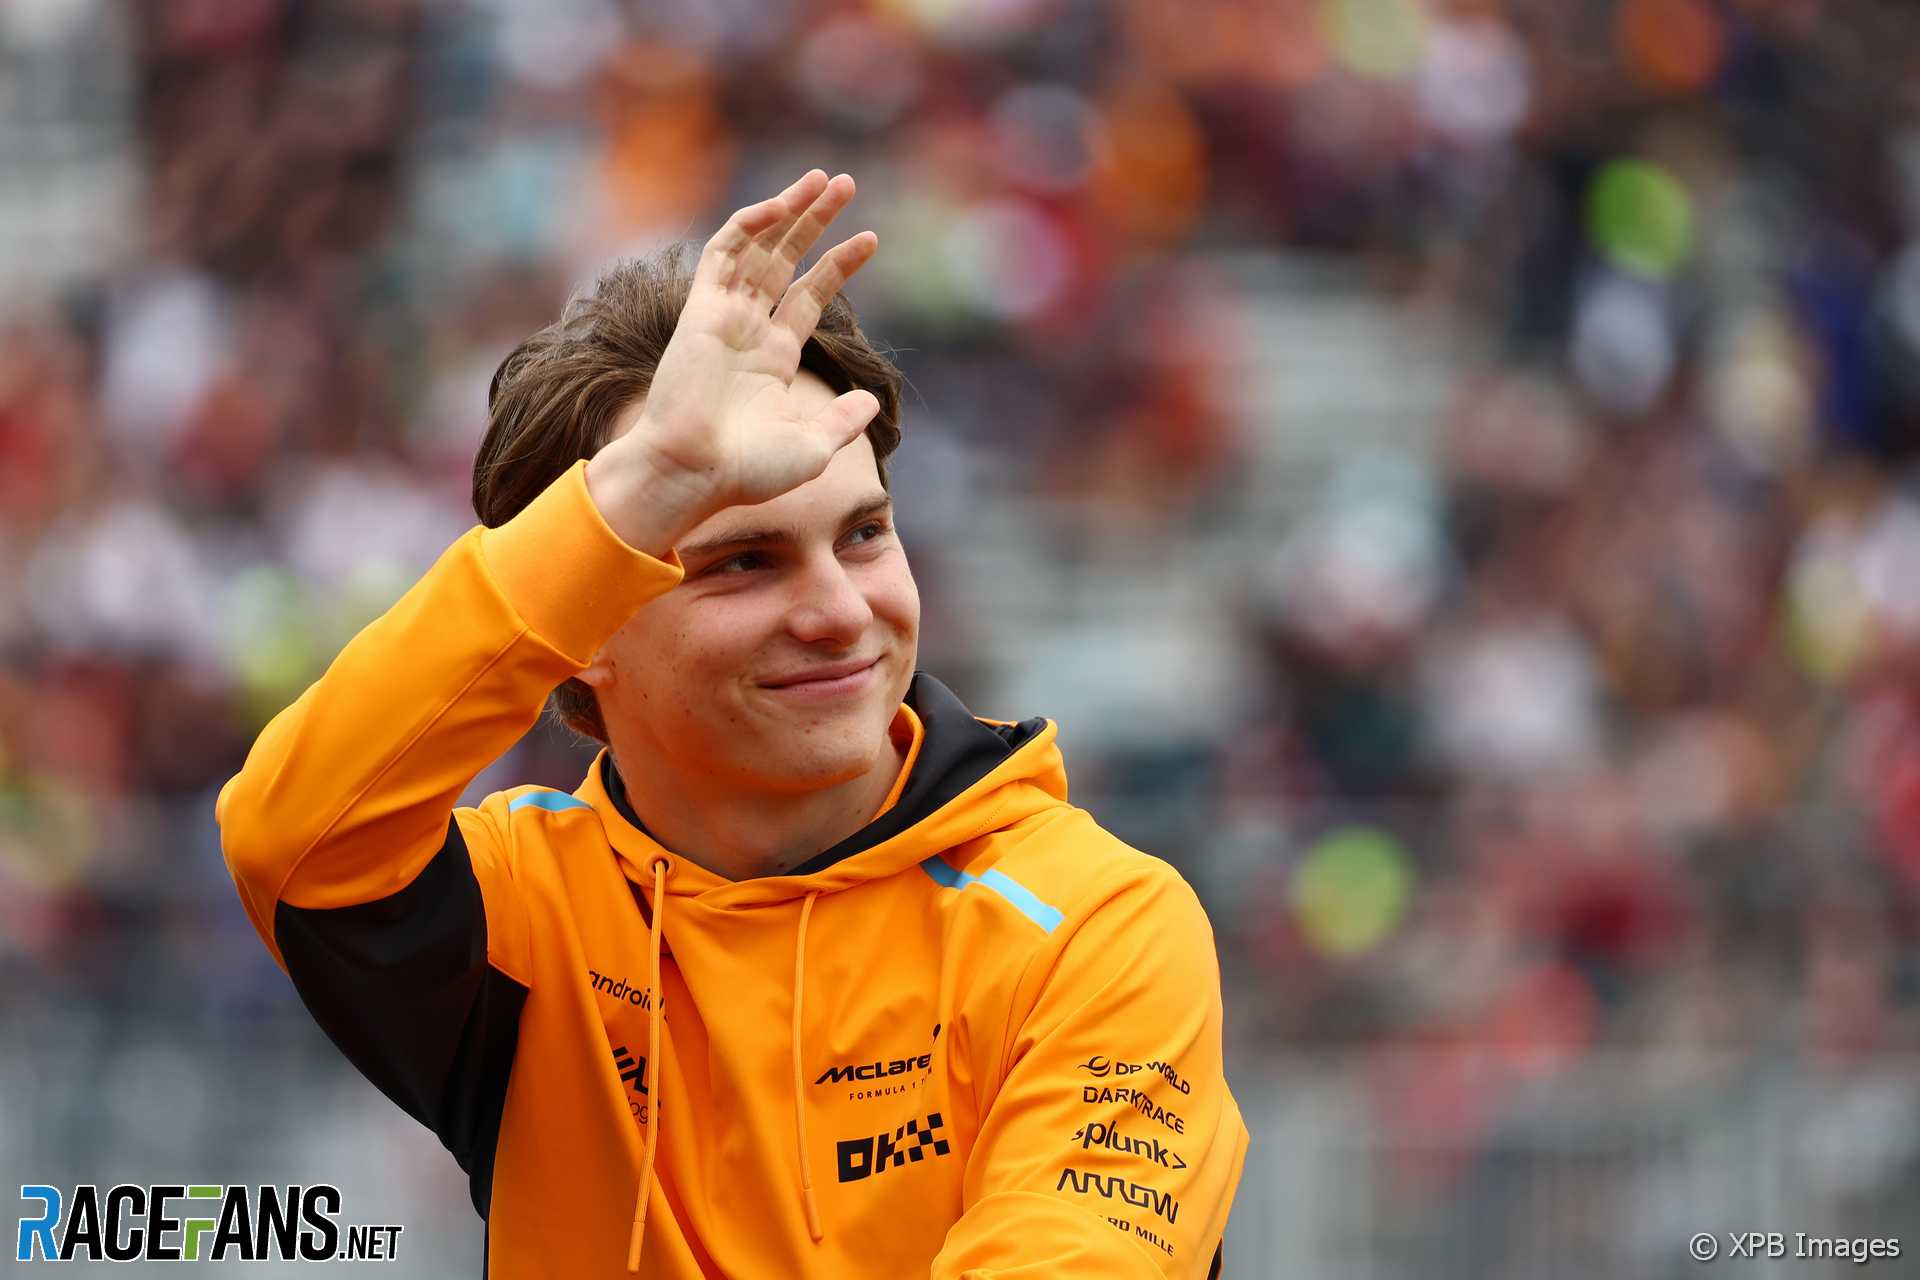 Oscar Piastri made his Formula 1 debut with McLaren in 2023